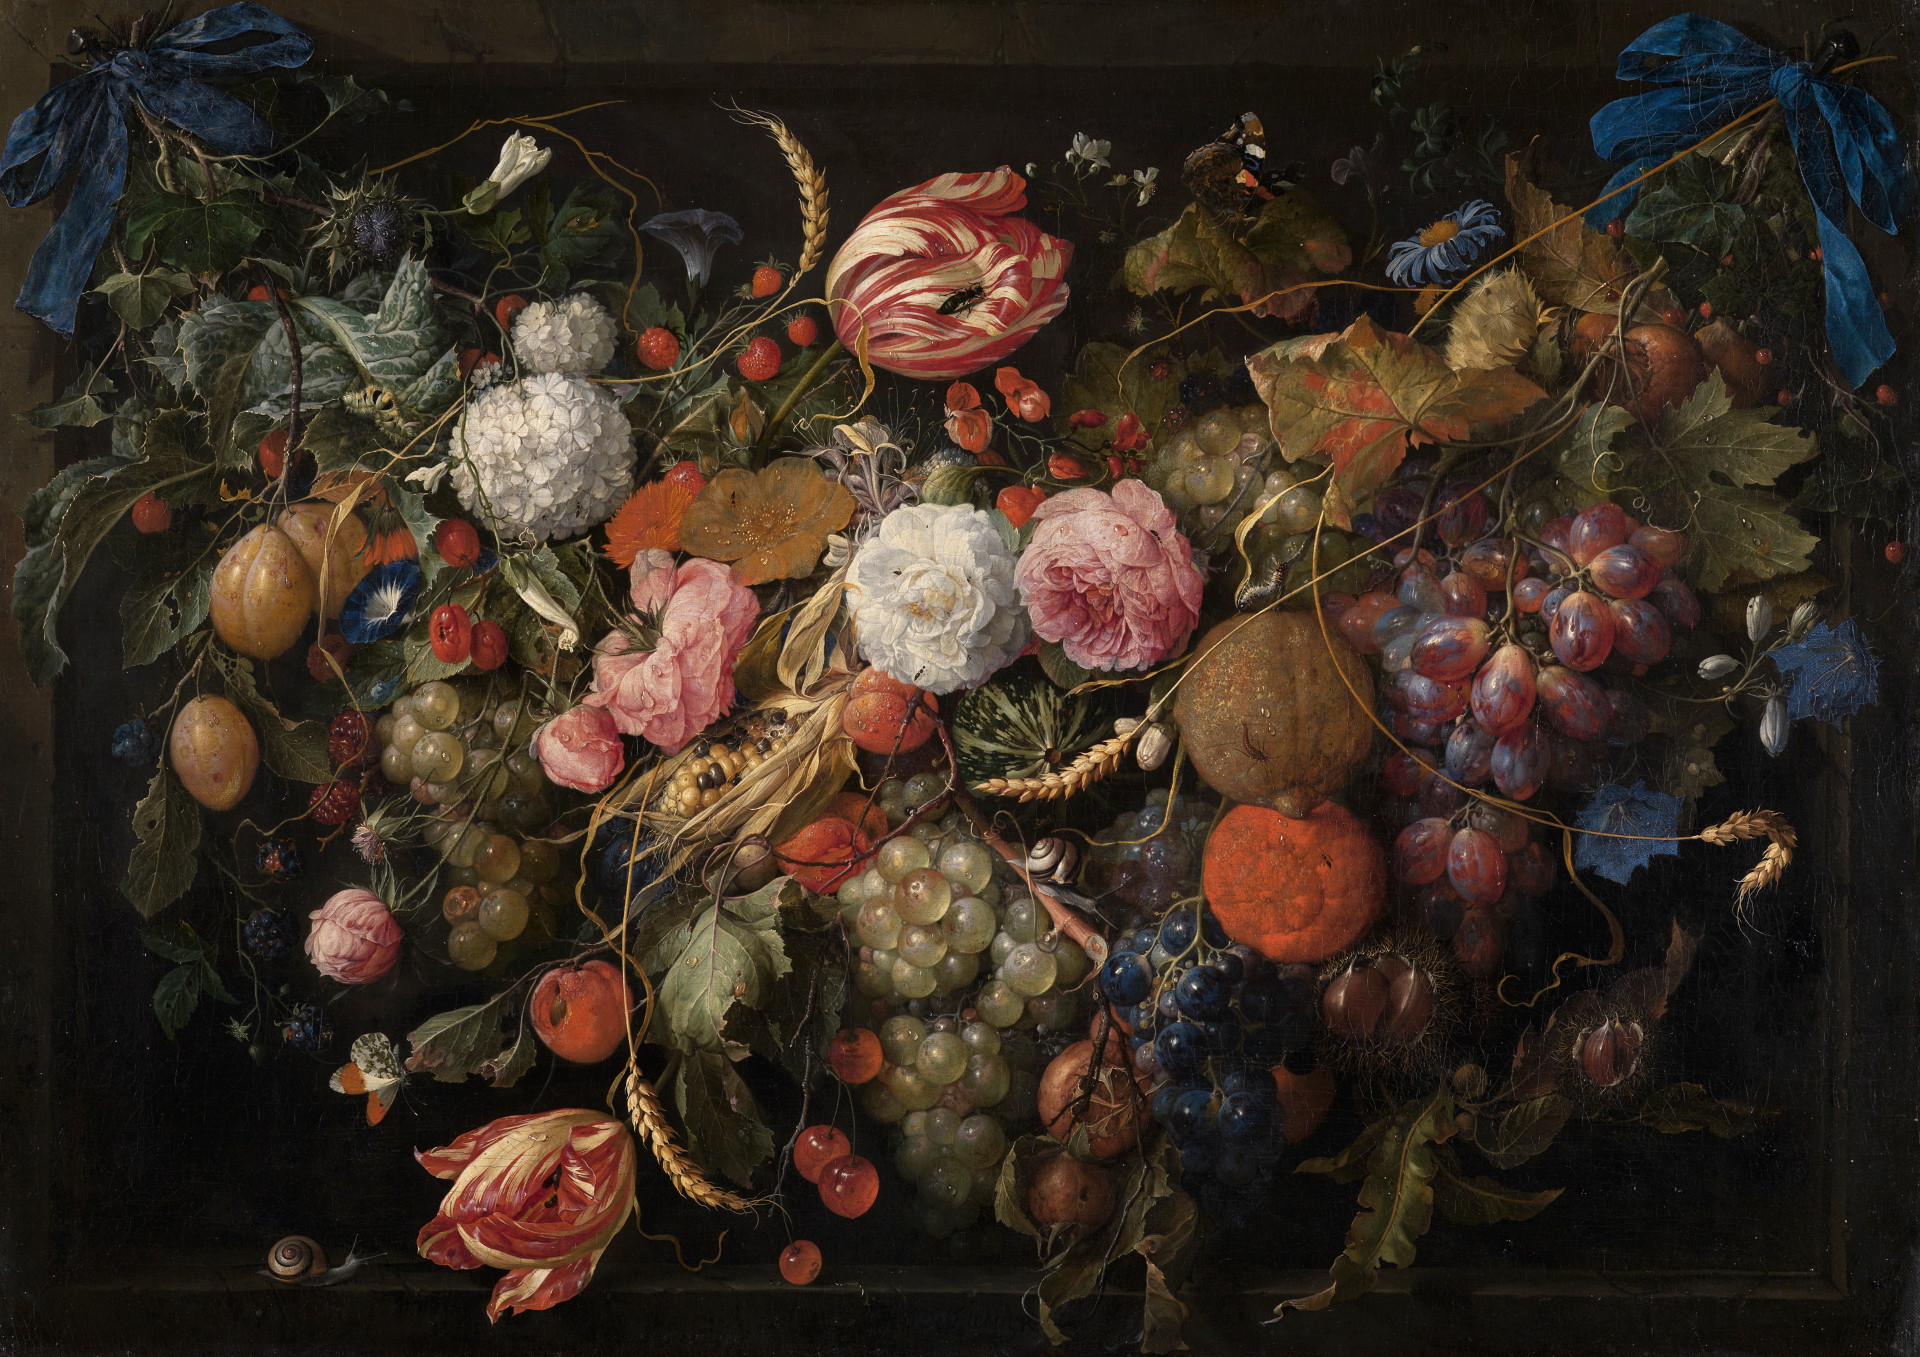 Abbildung von De Heems Blumen- und Früchtegirlande. Es zeigt eine Girlande die aus einer Vielzahl von Blumen, Ähren und Früchten besteht,